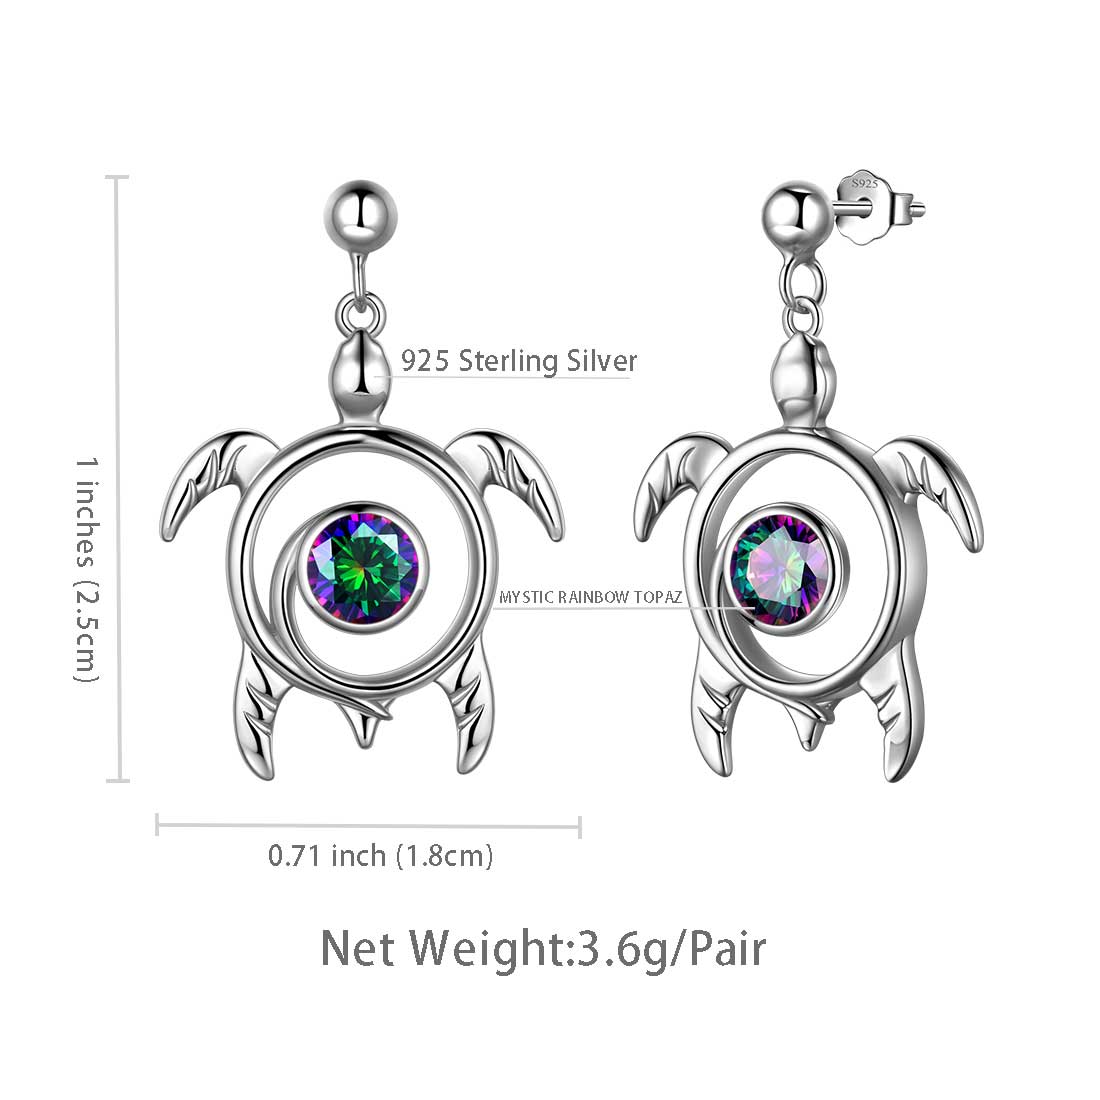 Turtle Mystic Rainbow Topaz Drop Earrings Sterling Silver - Earrings - Aurora Tears Jewelry